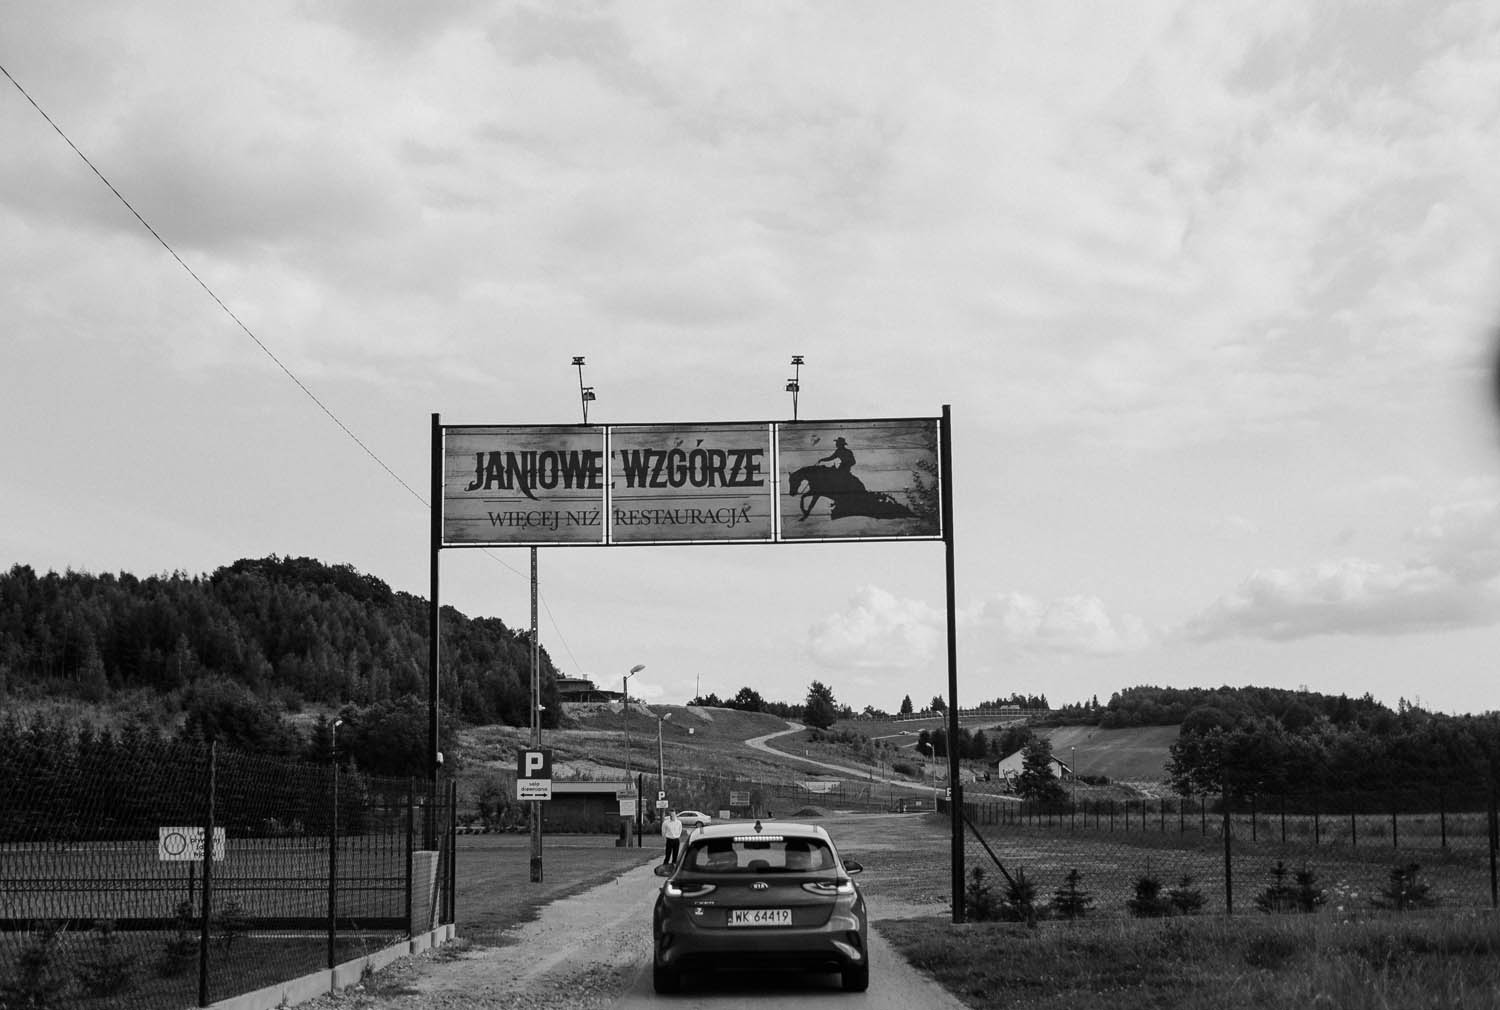 wesele na ranczo janiowe wzgórze, fotografia slubna w krakowie, www.jakubdziedzic.pl